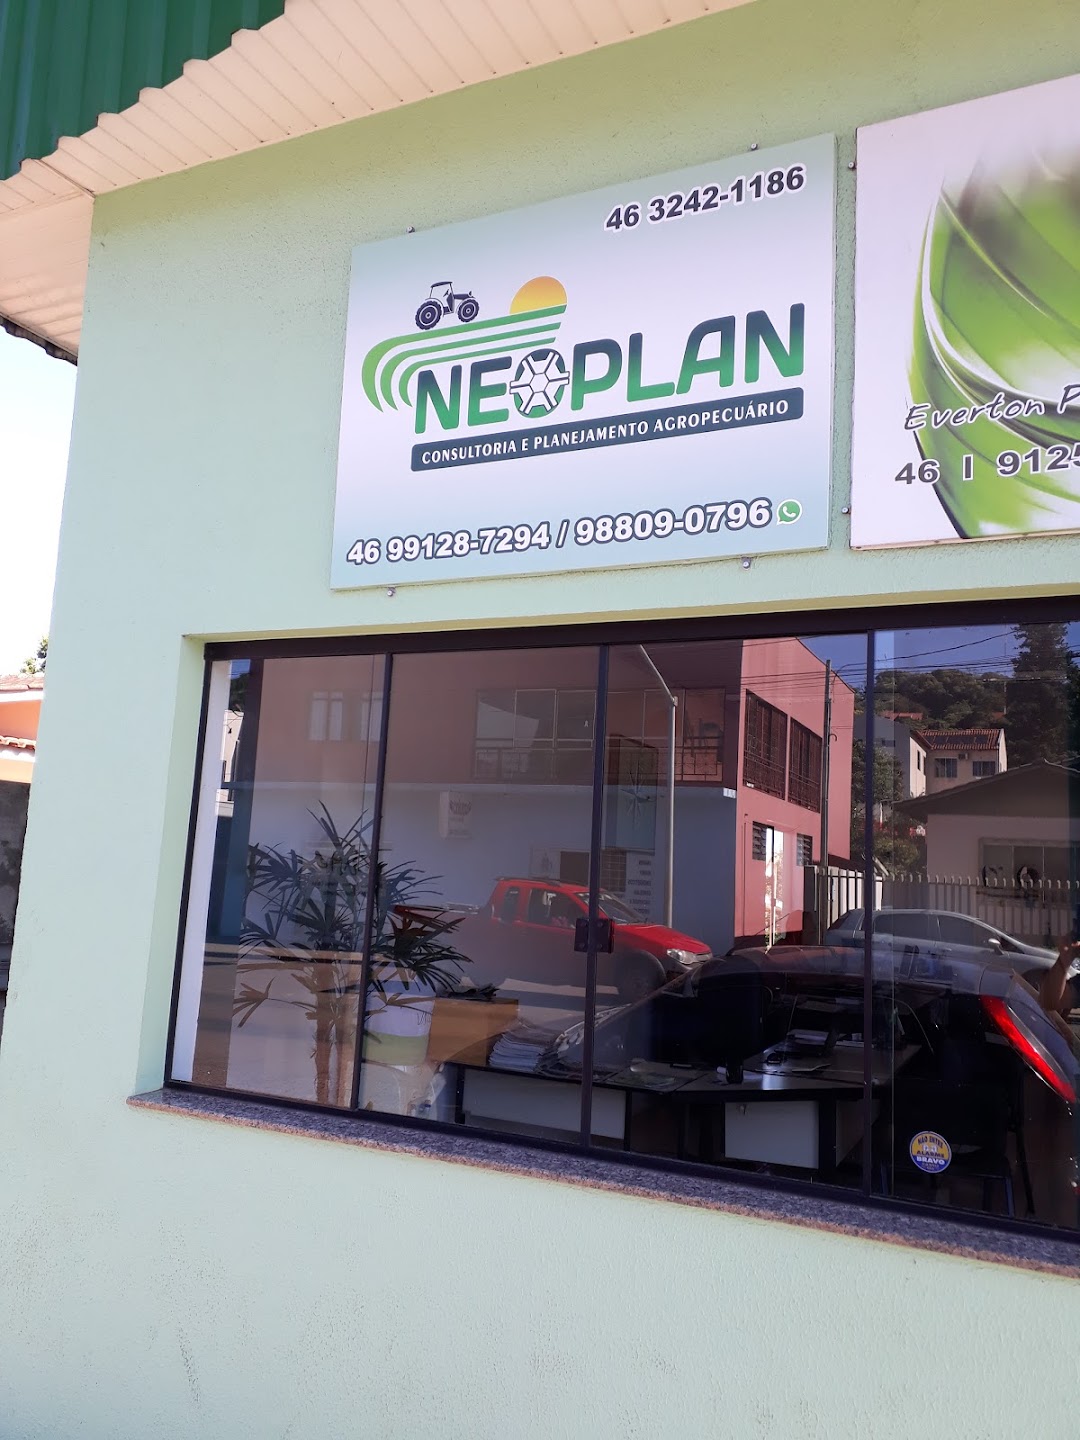 Neoplan- consultoria e planejamento agropecuário